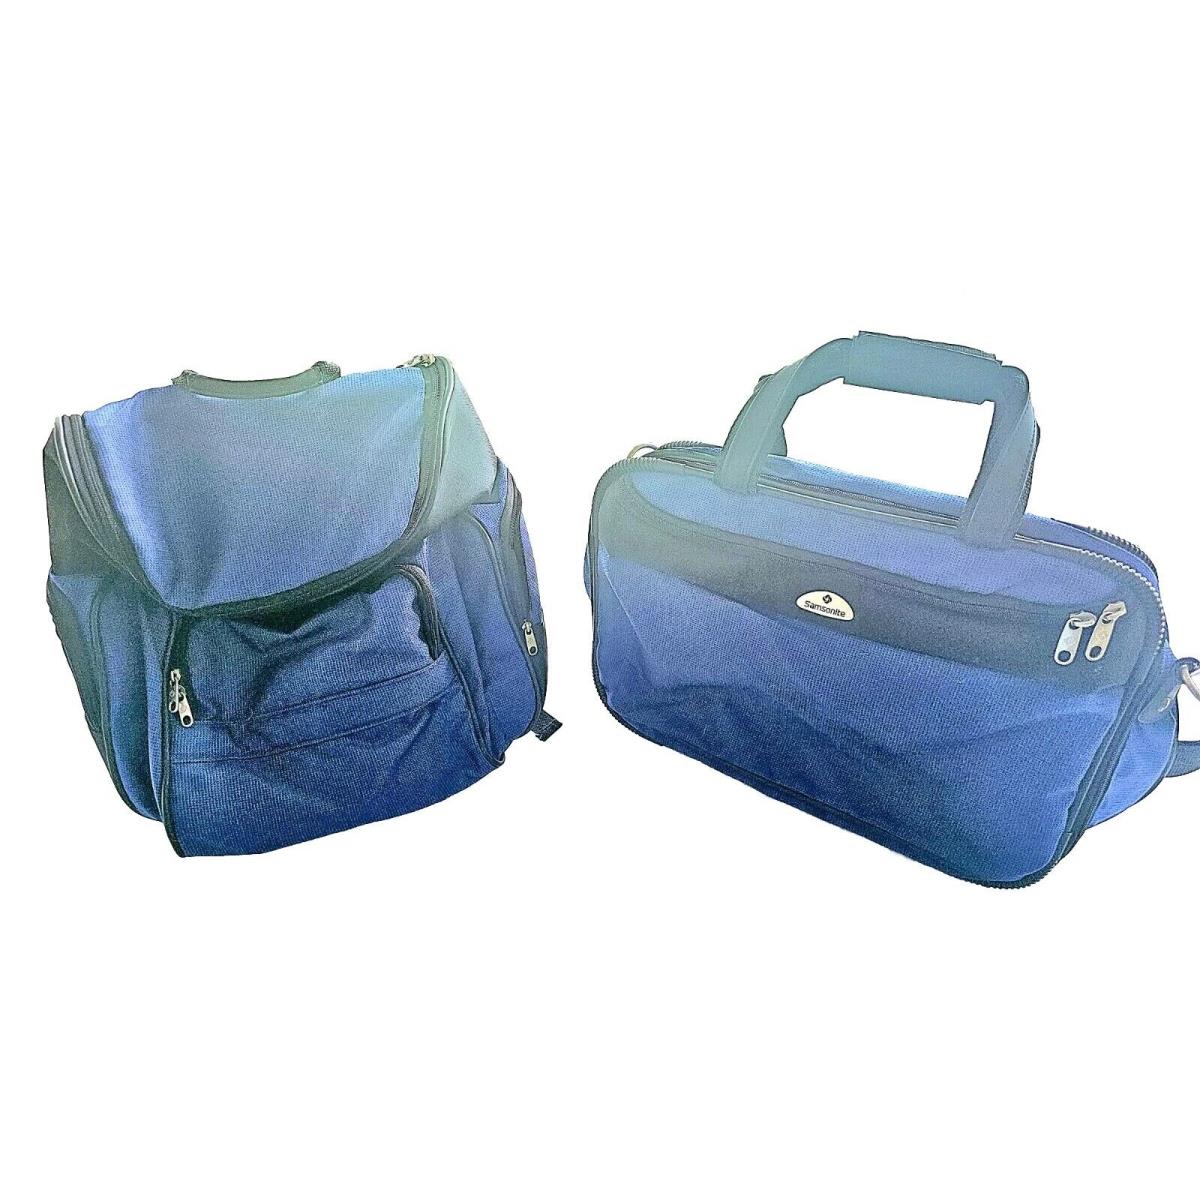 Set of 2 Samsonite Cordura Laptop or Messenger Case Backpack Blue/black Nwot